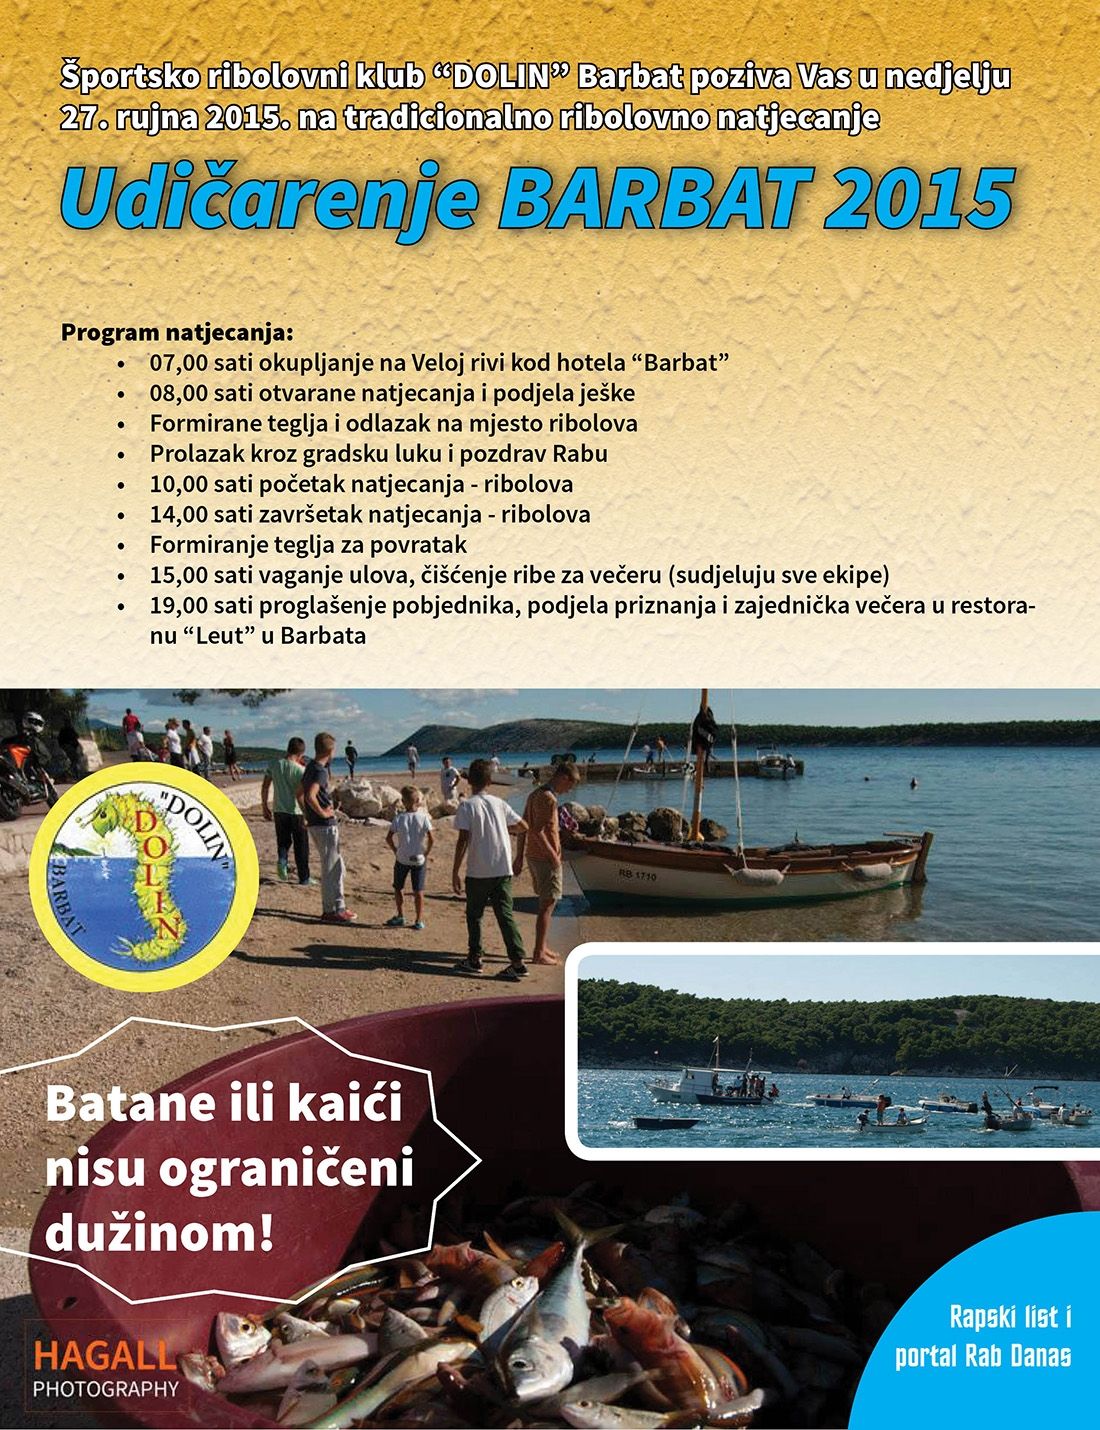 Tradicionalno ribolovno natjecanje “Udičarenje Barbat 2015”